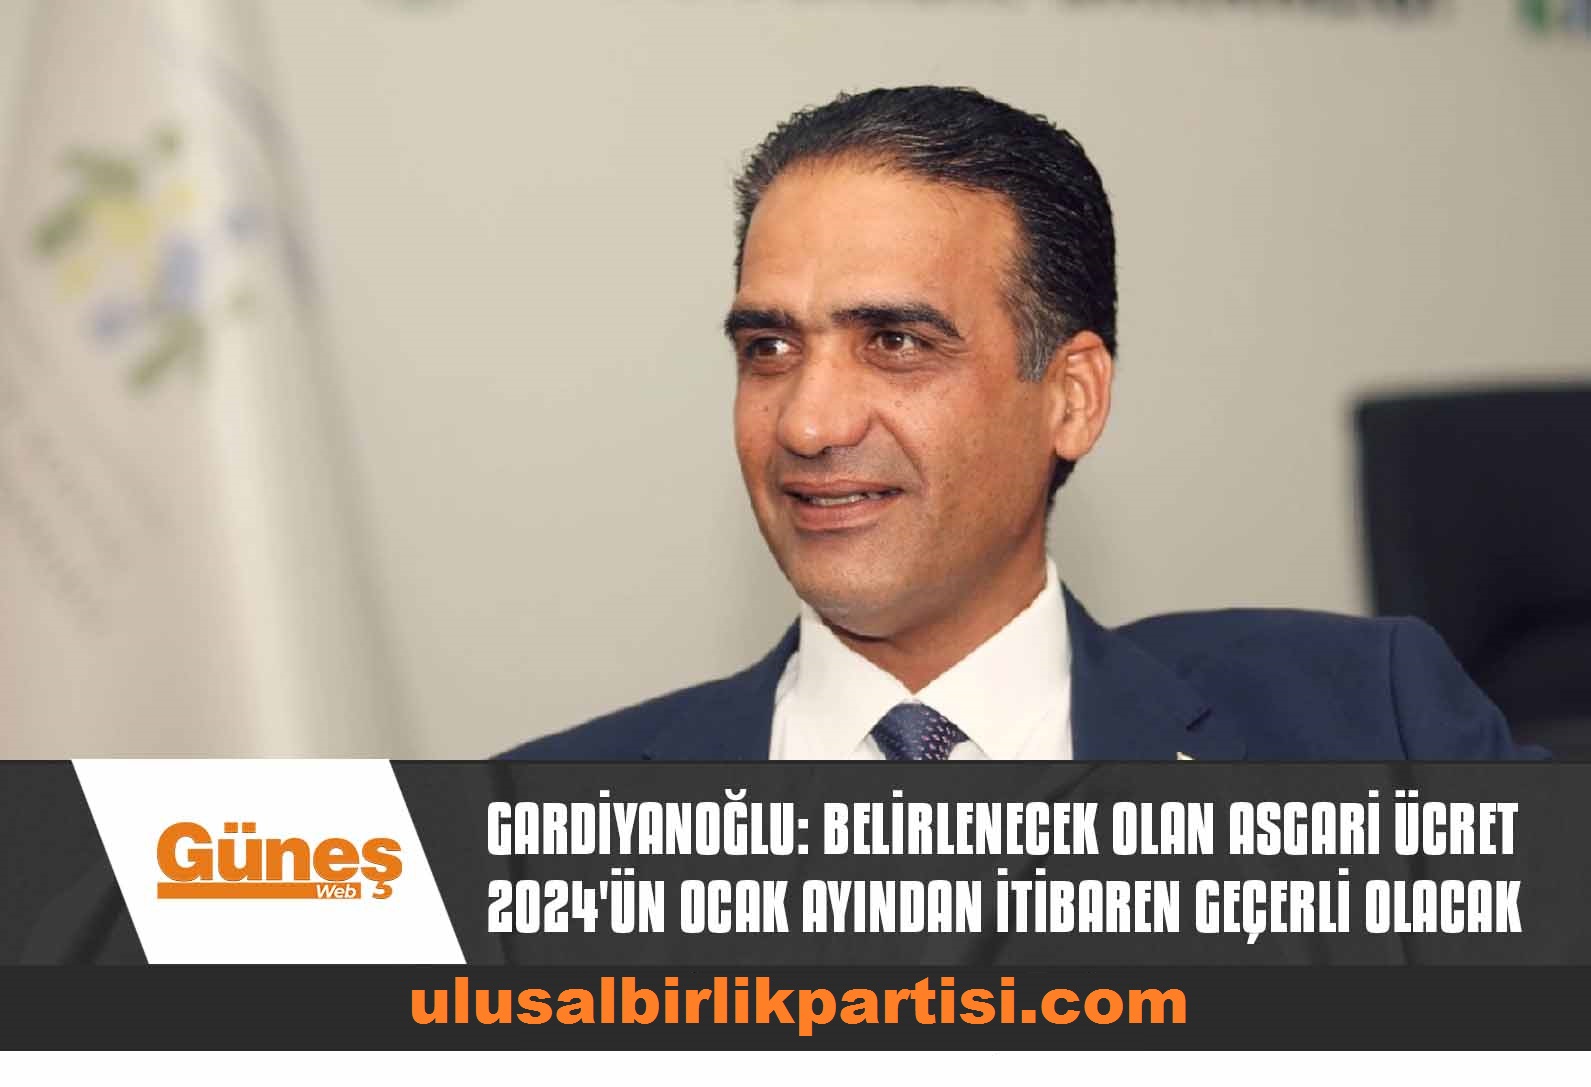 Read more about the article Gardiyanoğlu: Belirlenecek olan asgari ücret 2024’ün Ocak ayından itibaren geçerli olacak